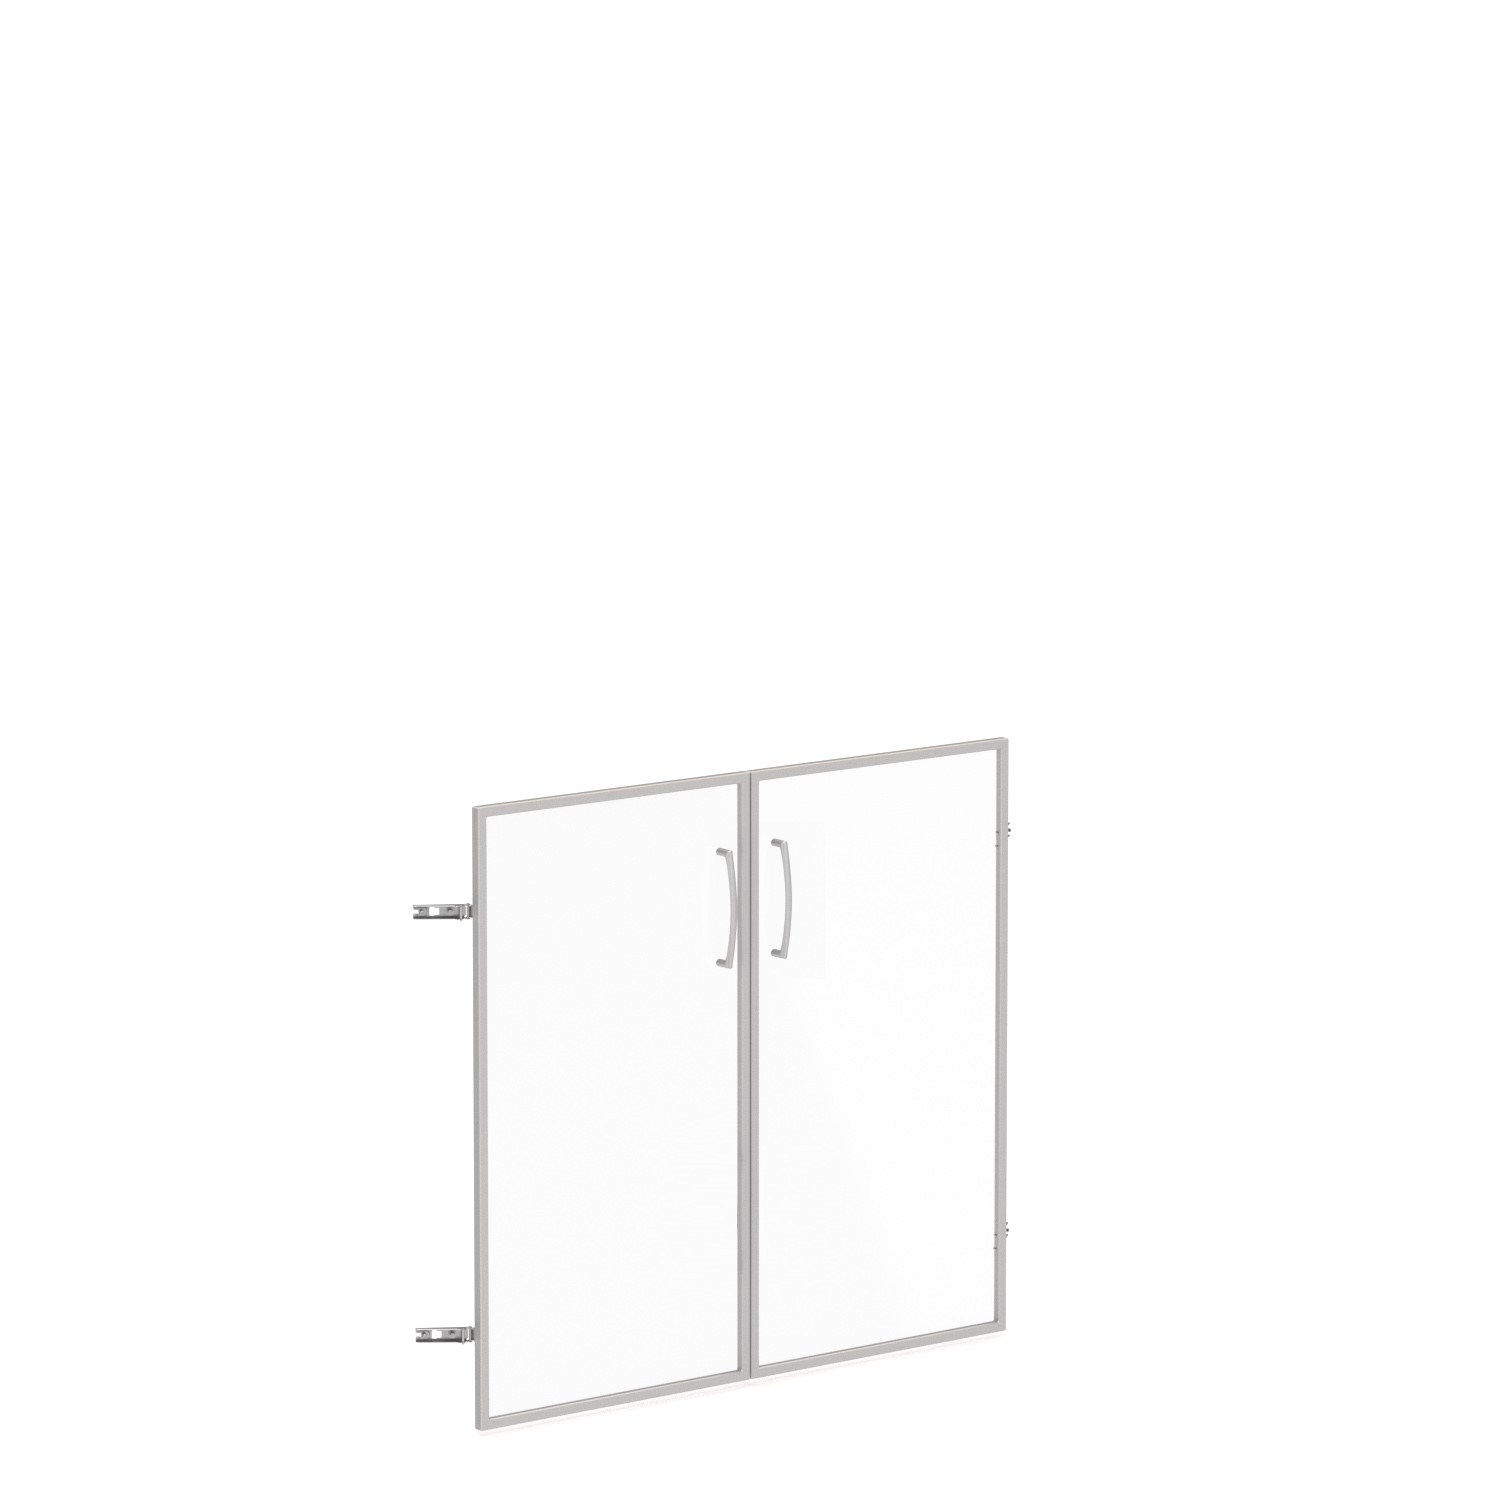 Skleněné dveře v AL rámu, výška 69,8cm, šířka 78,6/118,6cm